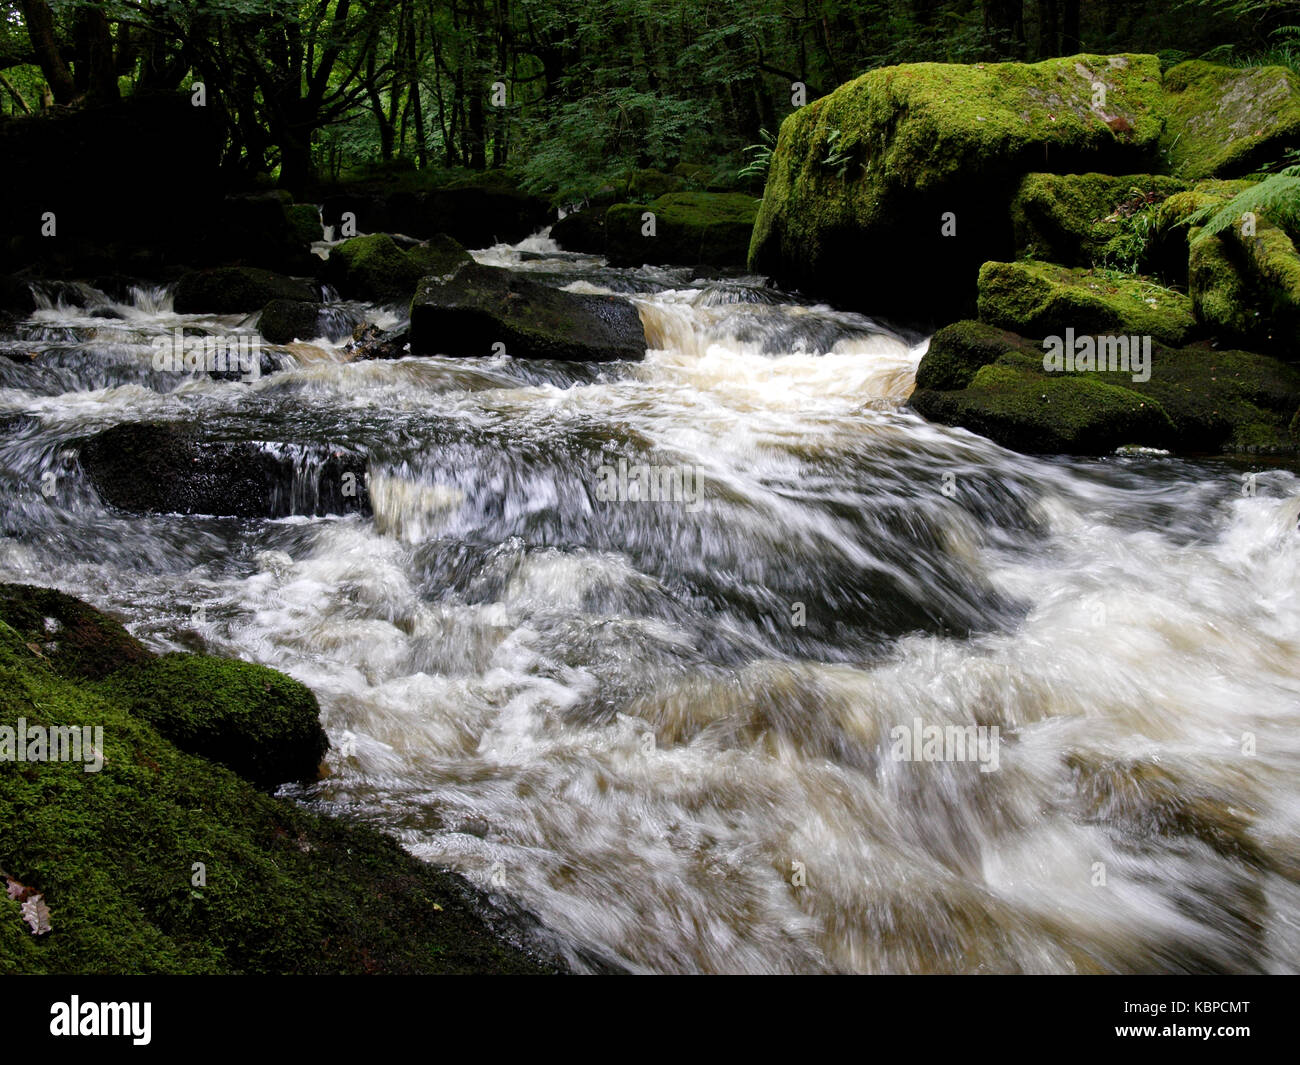 Golitha falls, sur la rivière fowey à travers l'ancienne forêt de chênes d'draynes bois, bodmin, Cornwall, uk Banque D'Images